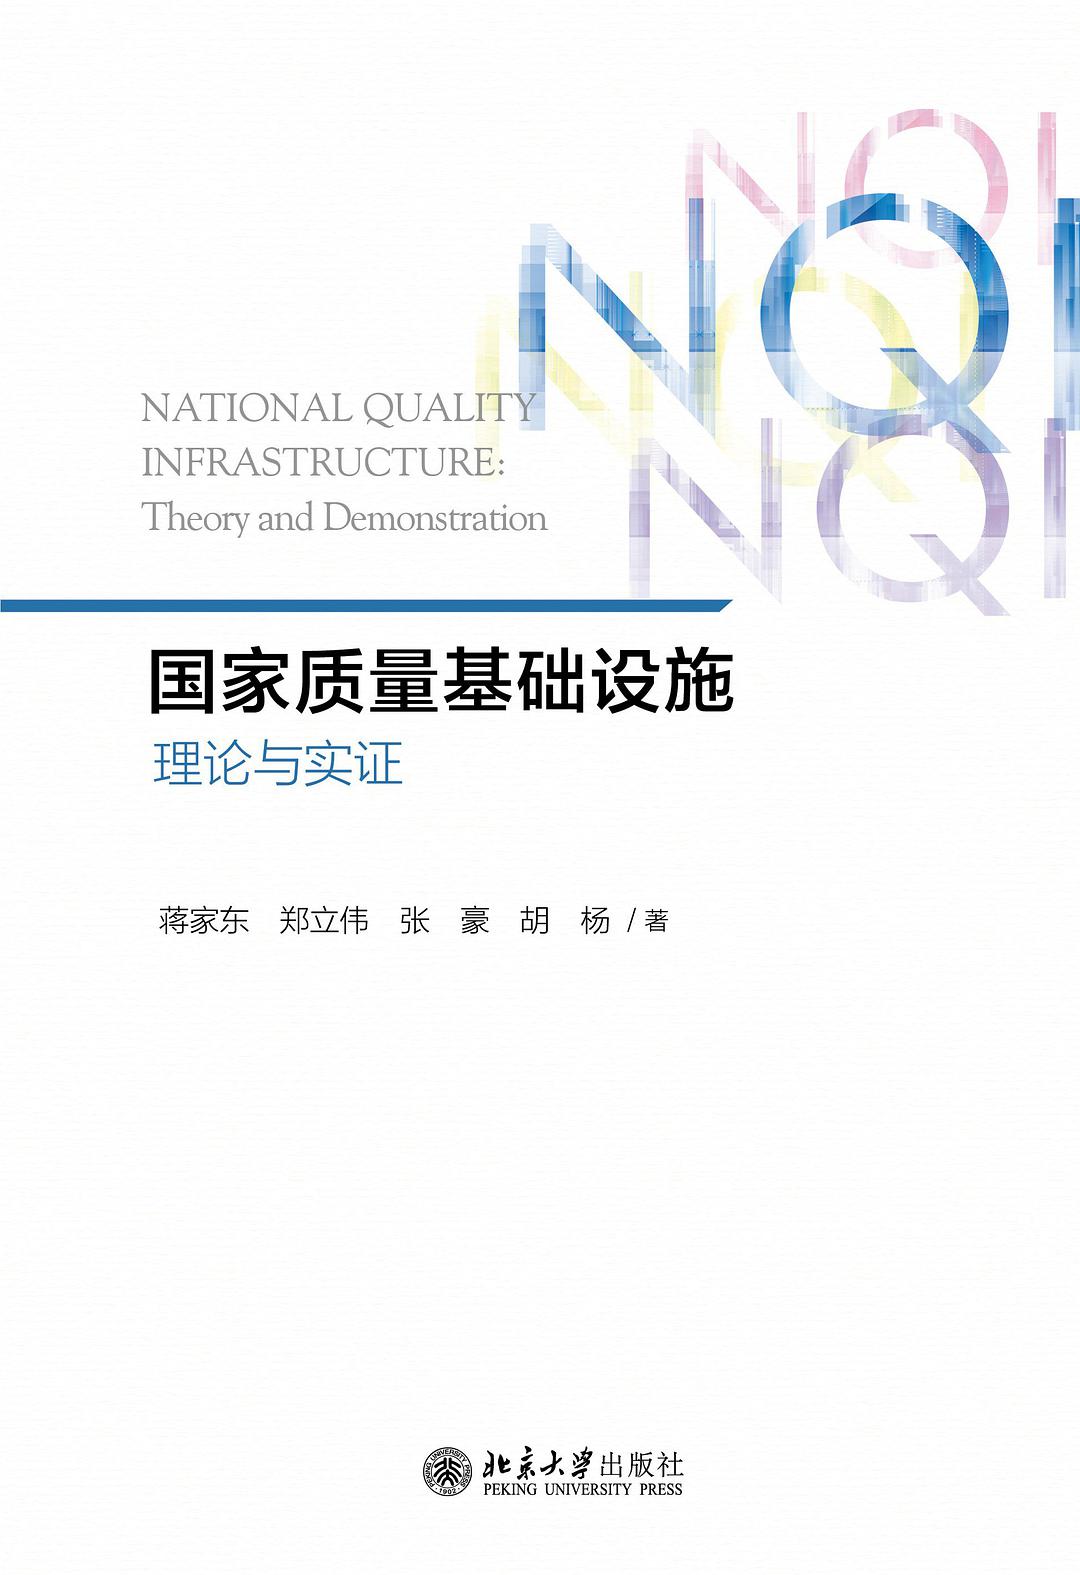 国家质量基础设施 理论与实证 theory and demonstration